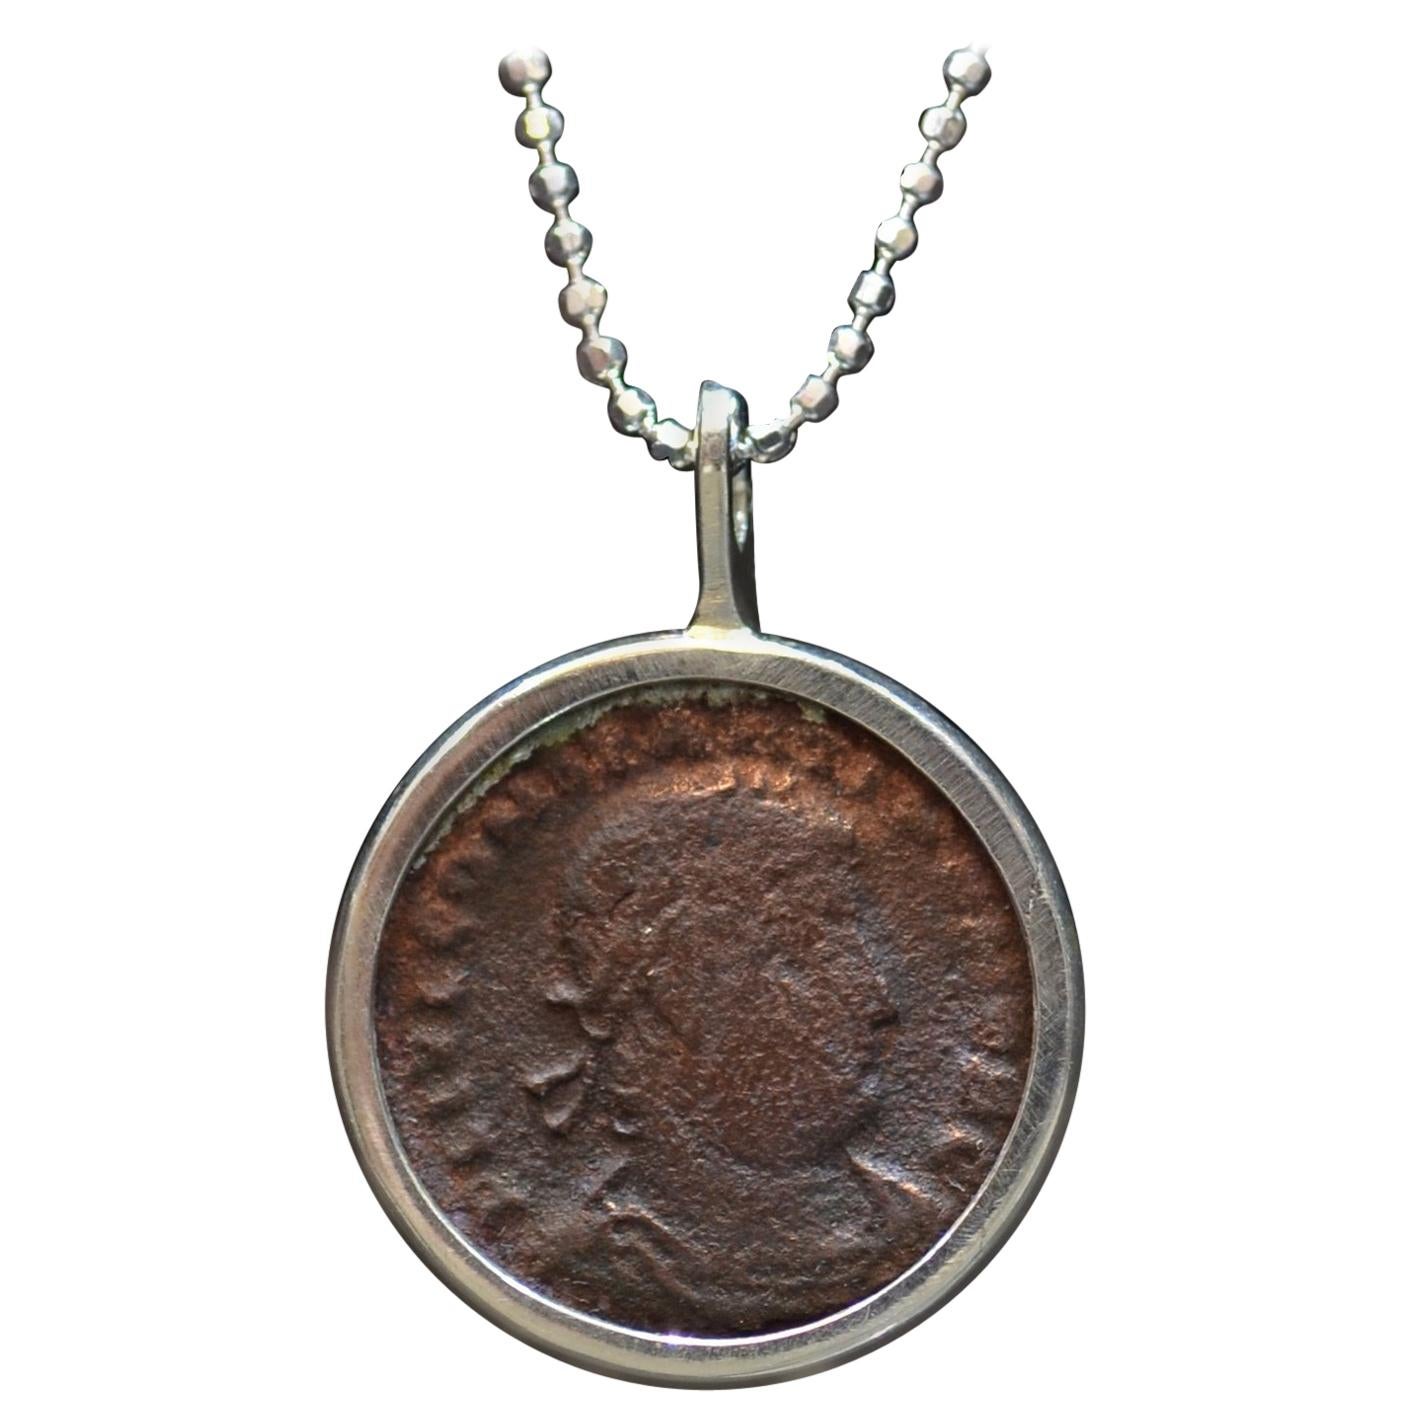 Collier en argent Constantius II avec pièce de monnaie